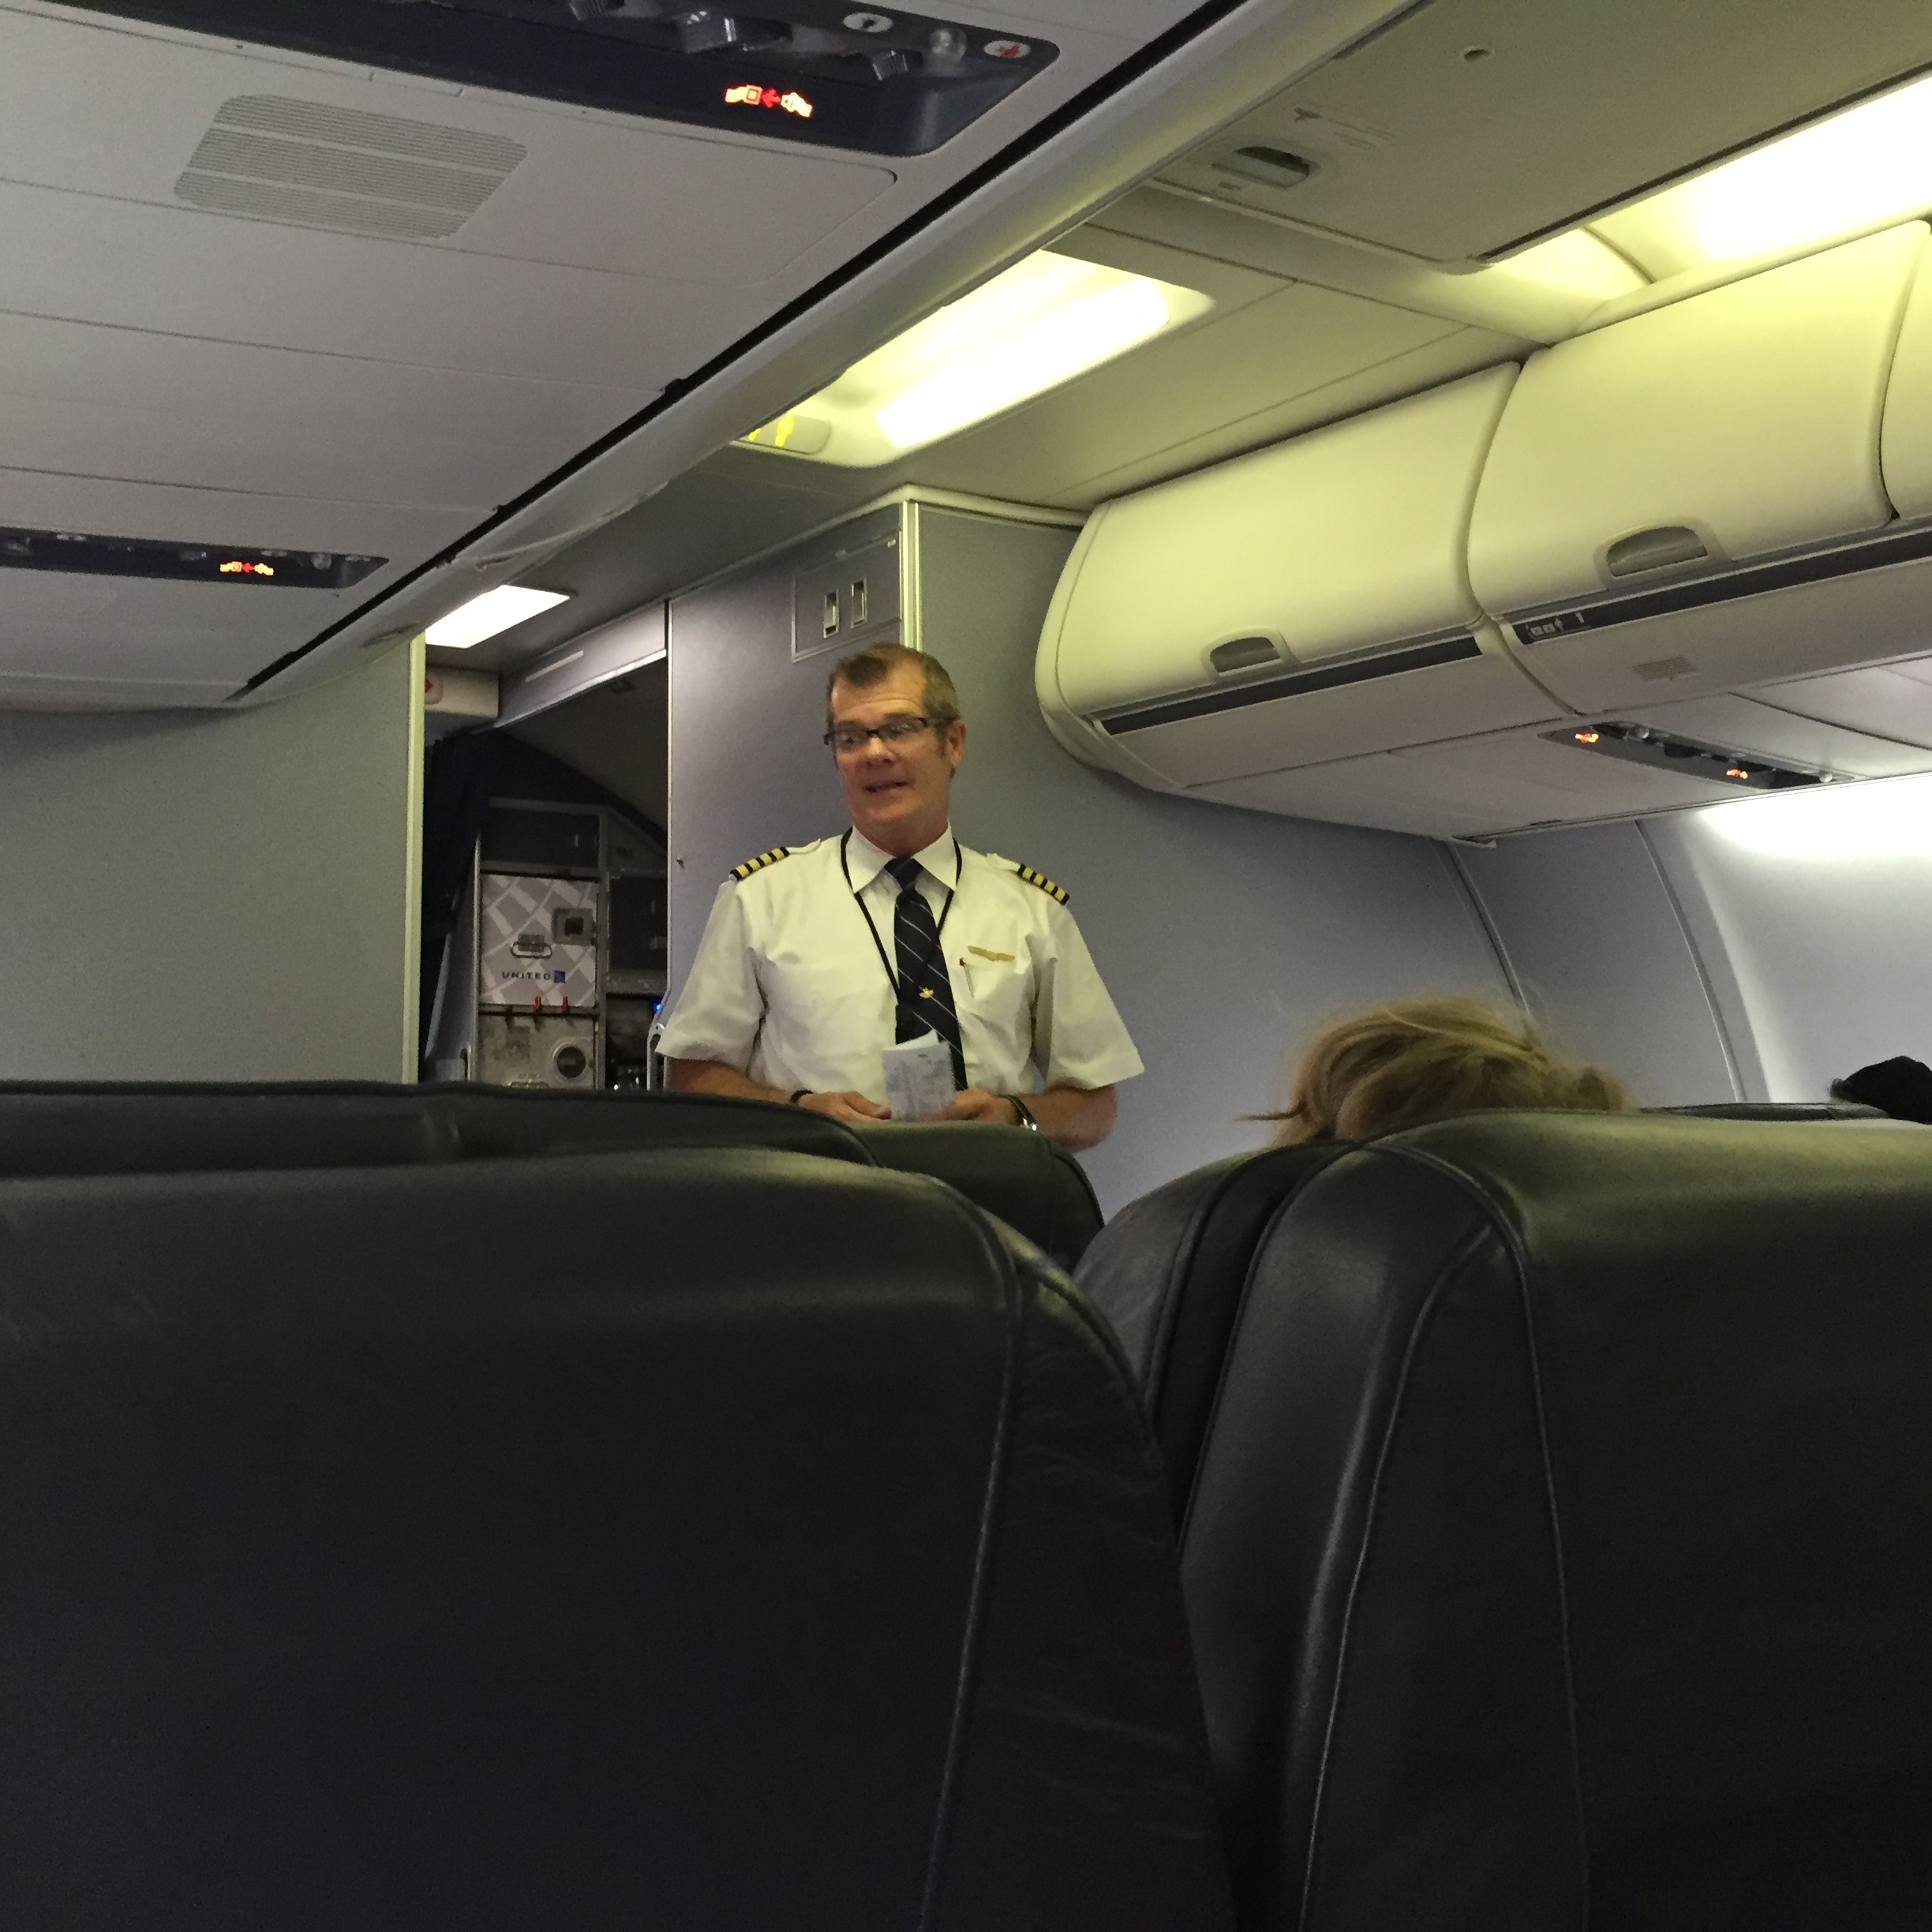 El Capitan de la aeronave, dio personalmente la bienvenida a los pasajeros de Business class, ¡Un grán detalle!